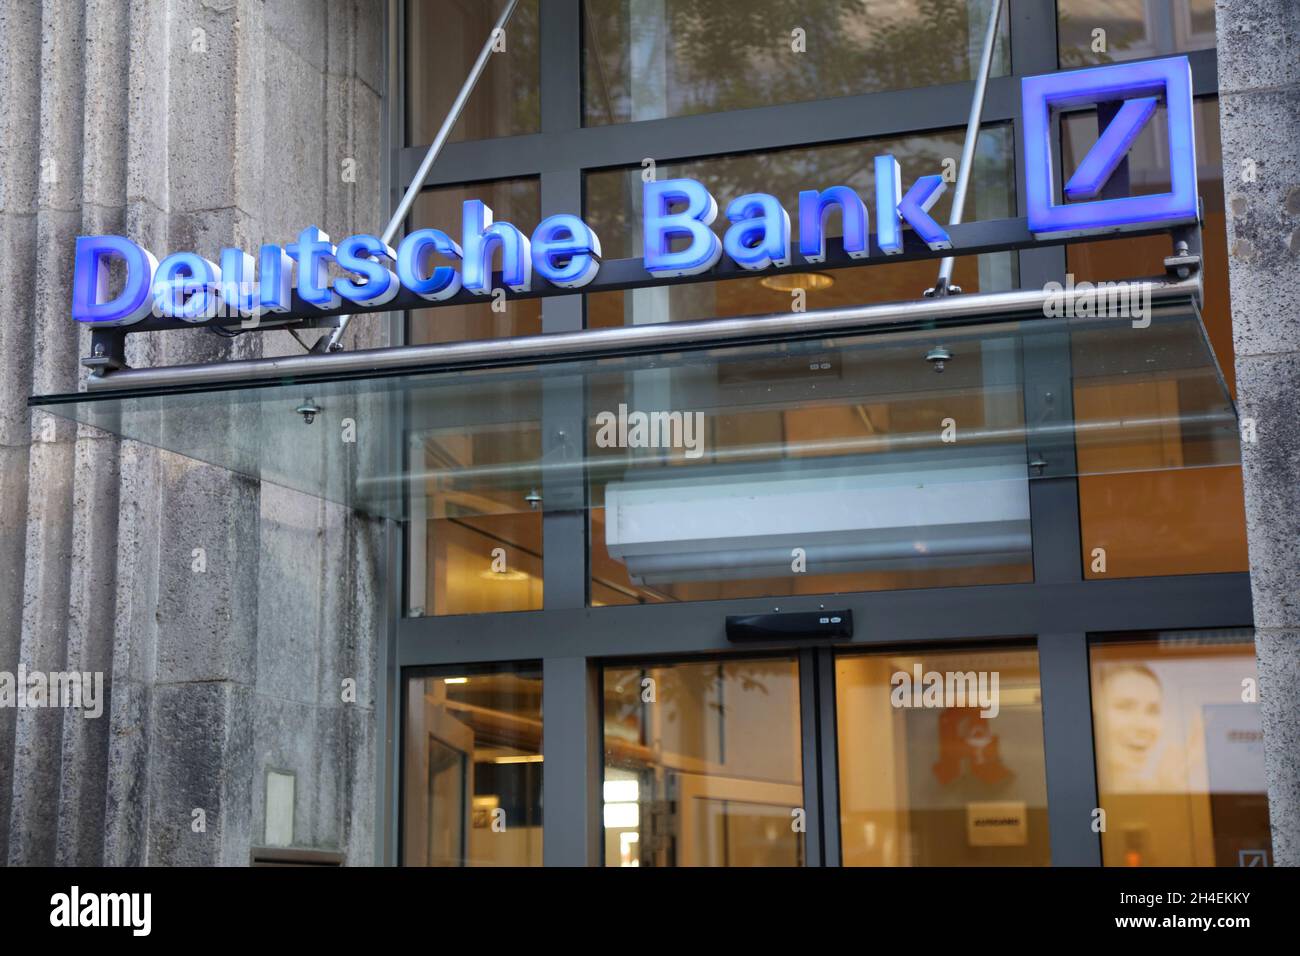 MULHEIM a.d. RUHR, DEUTSCHLAND - 21. SEPTEMBER 2020: Deutsche Bank  Niederlassung in Dortmund, Deutschland. Die Deutsche Bank gehört zu den 20  größten Bankengruppen im wo Stockfotografie - Alamy